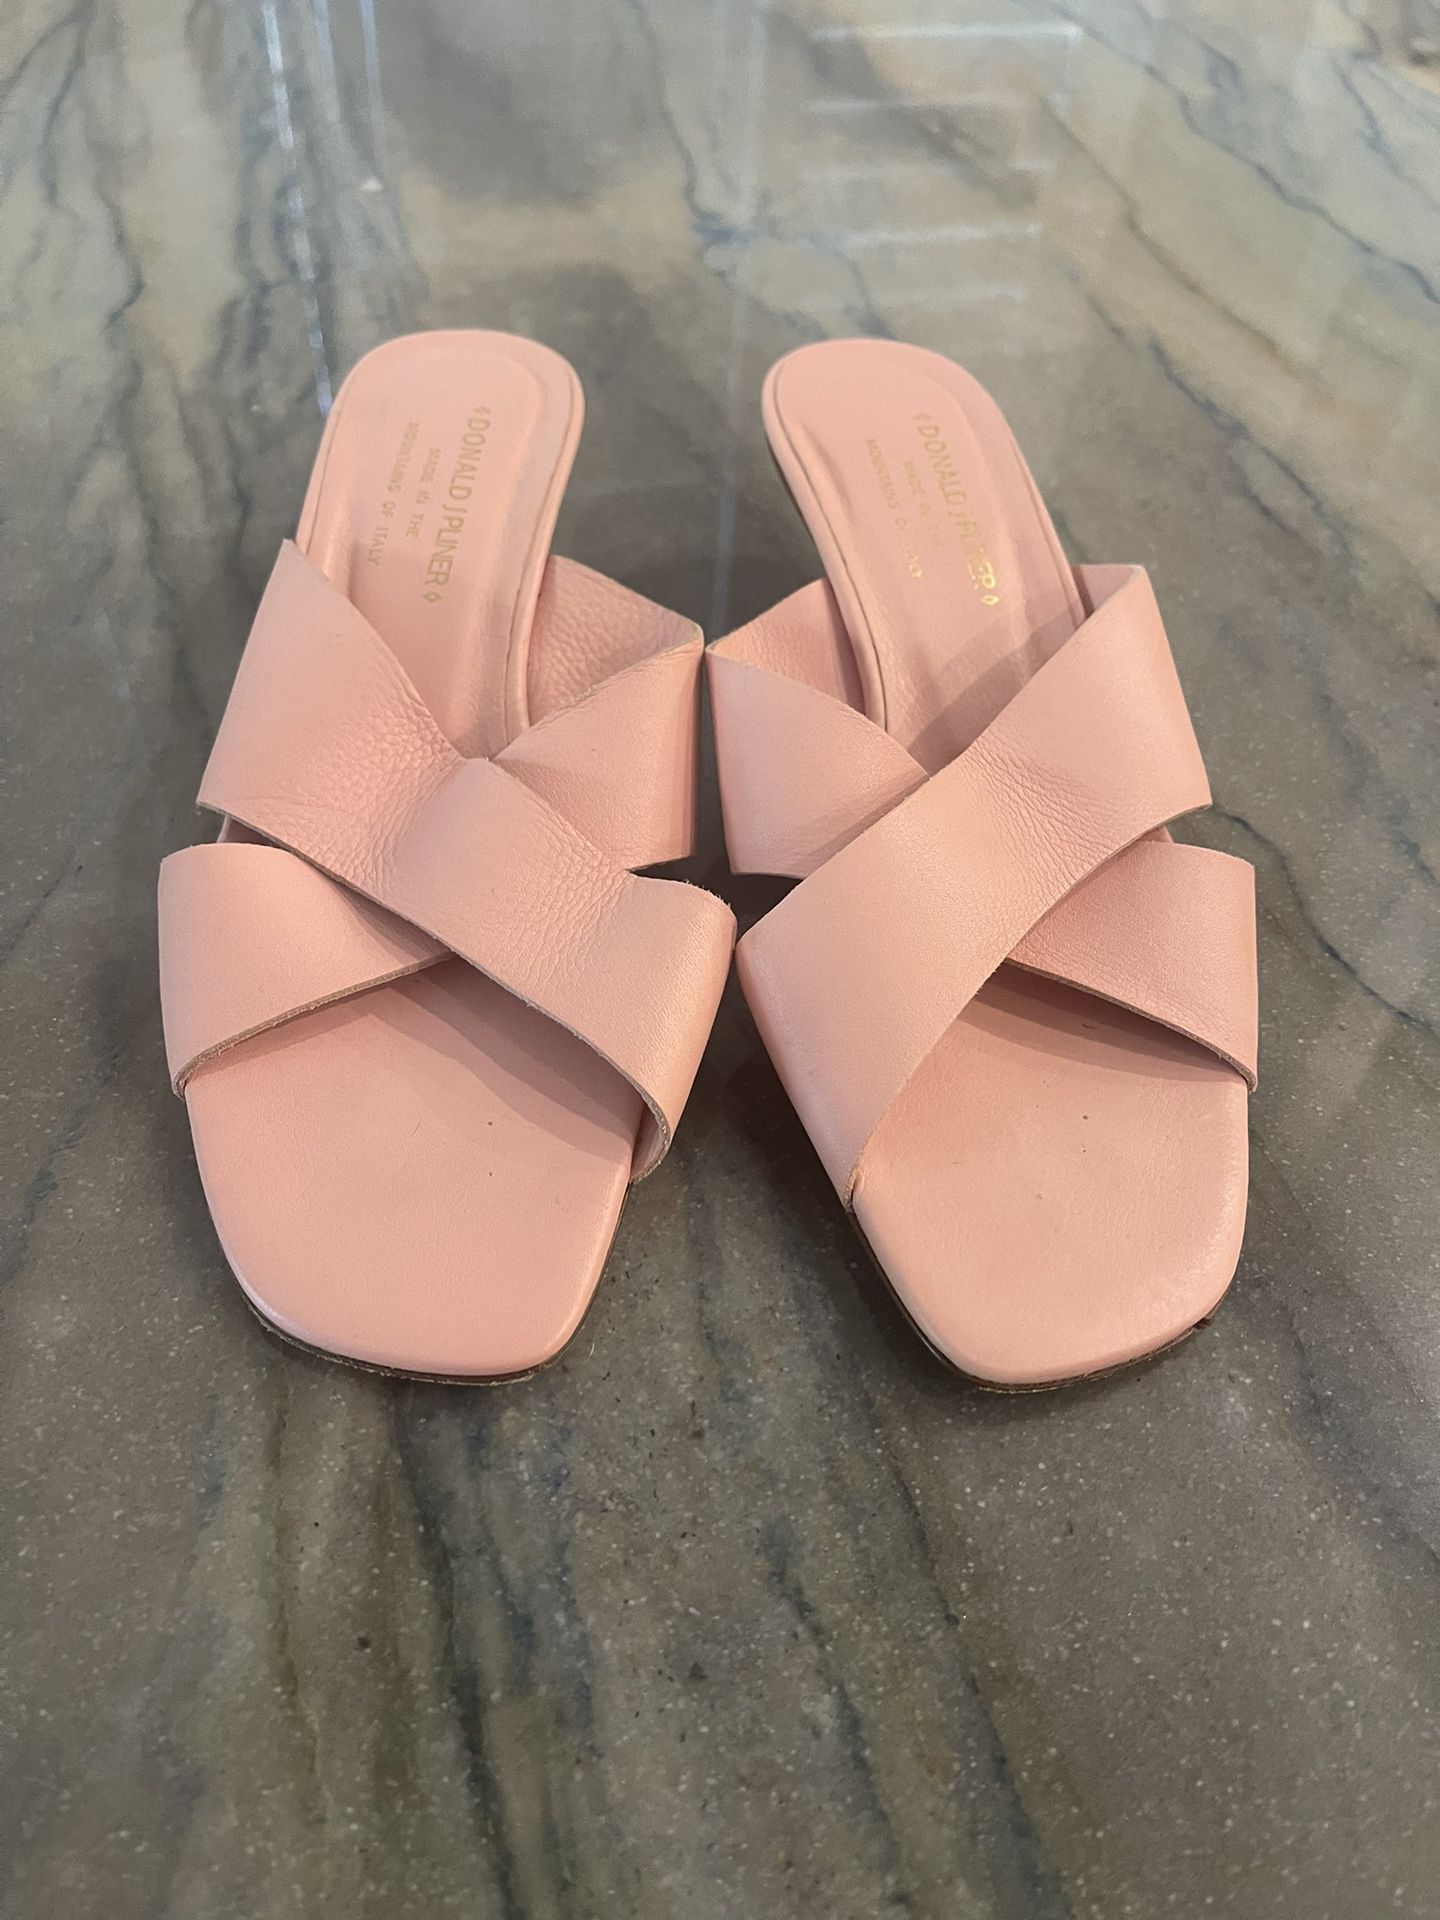 Donald Pliner Women’s 8.5 Pink Heel